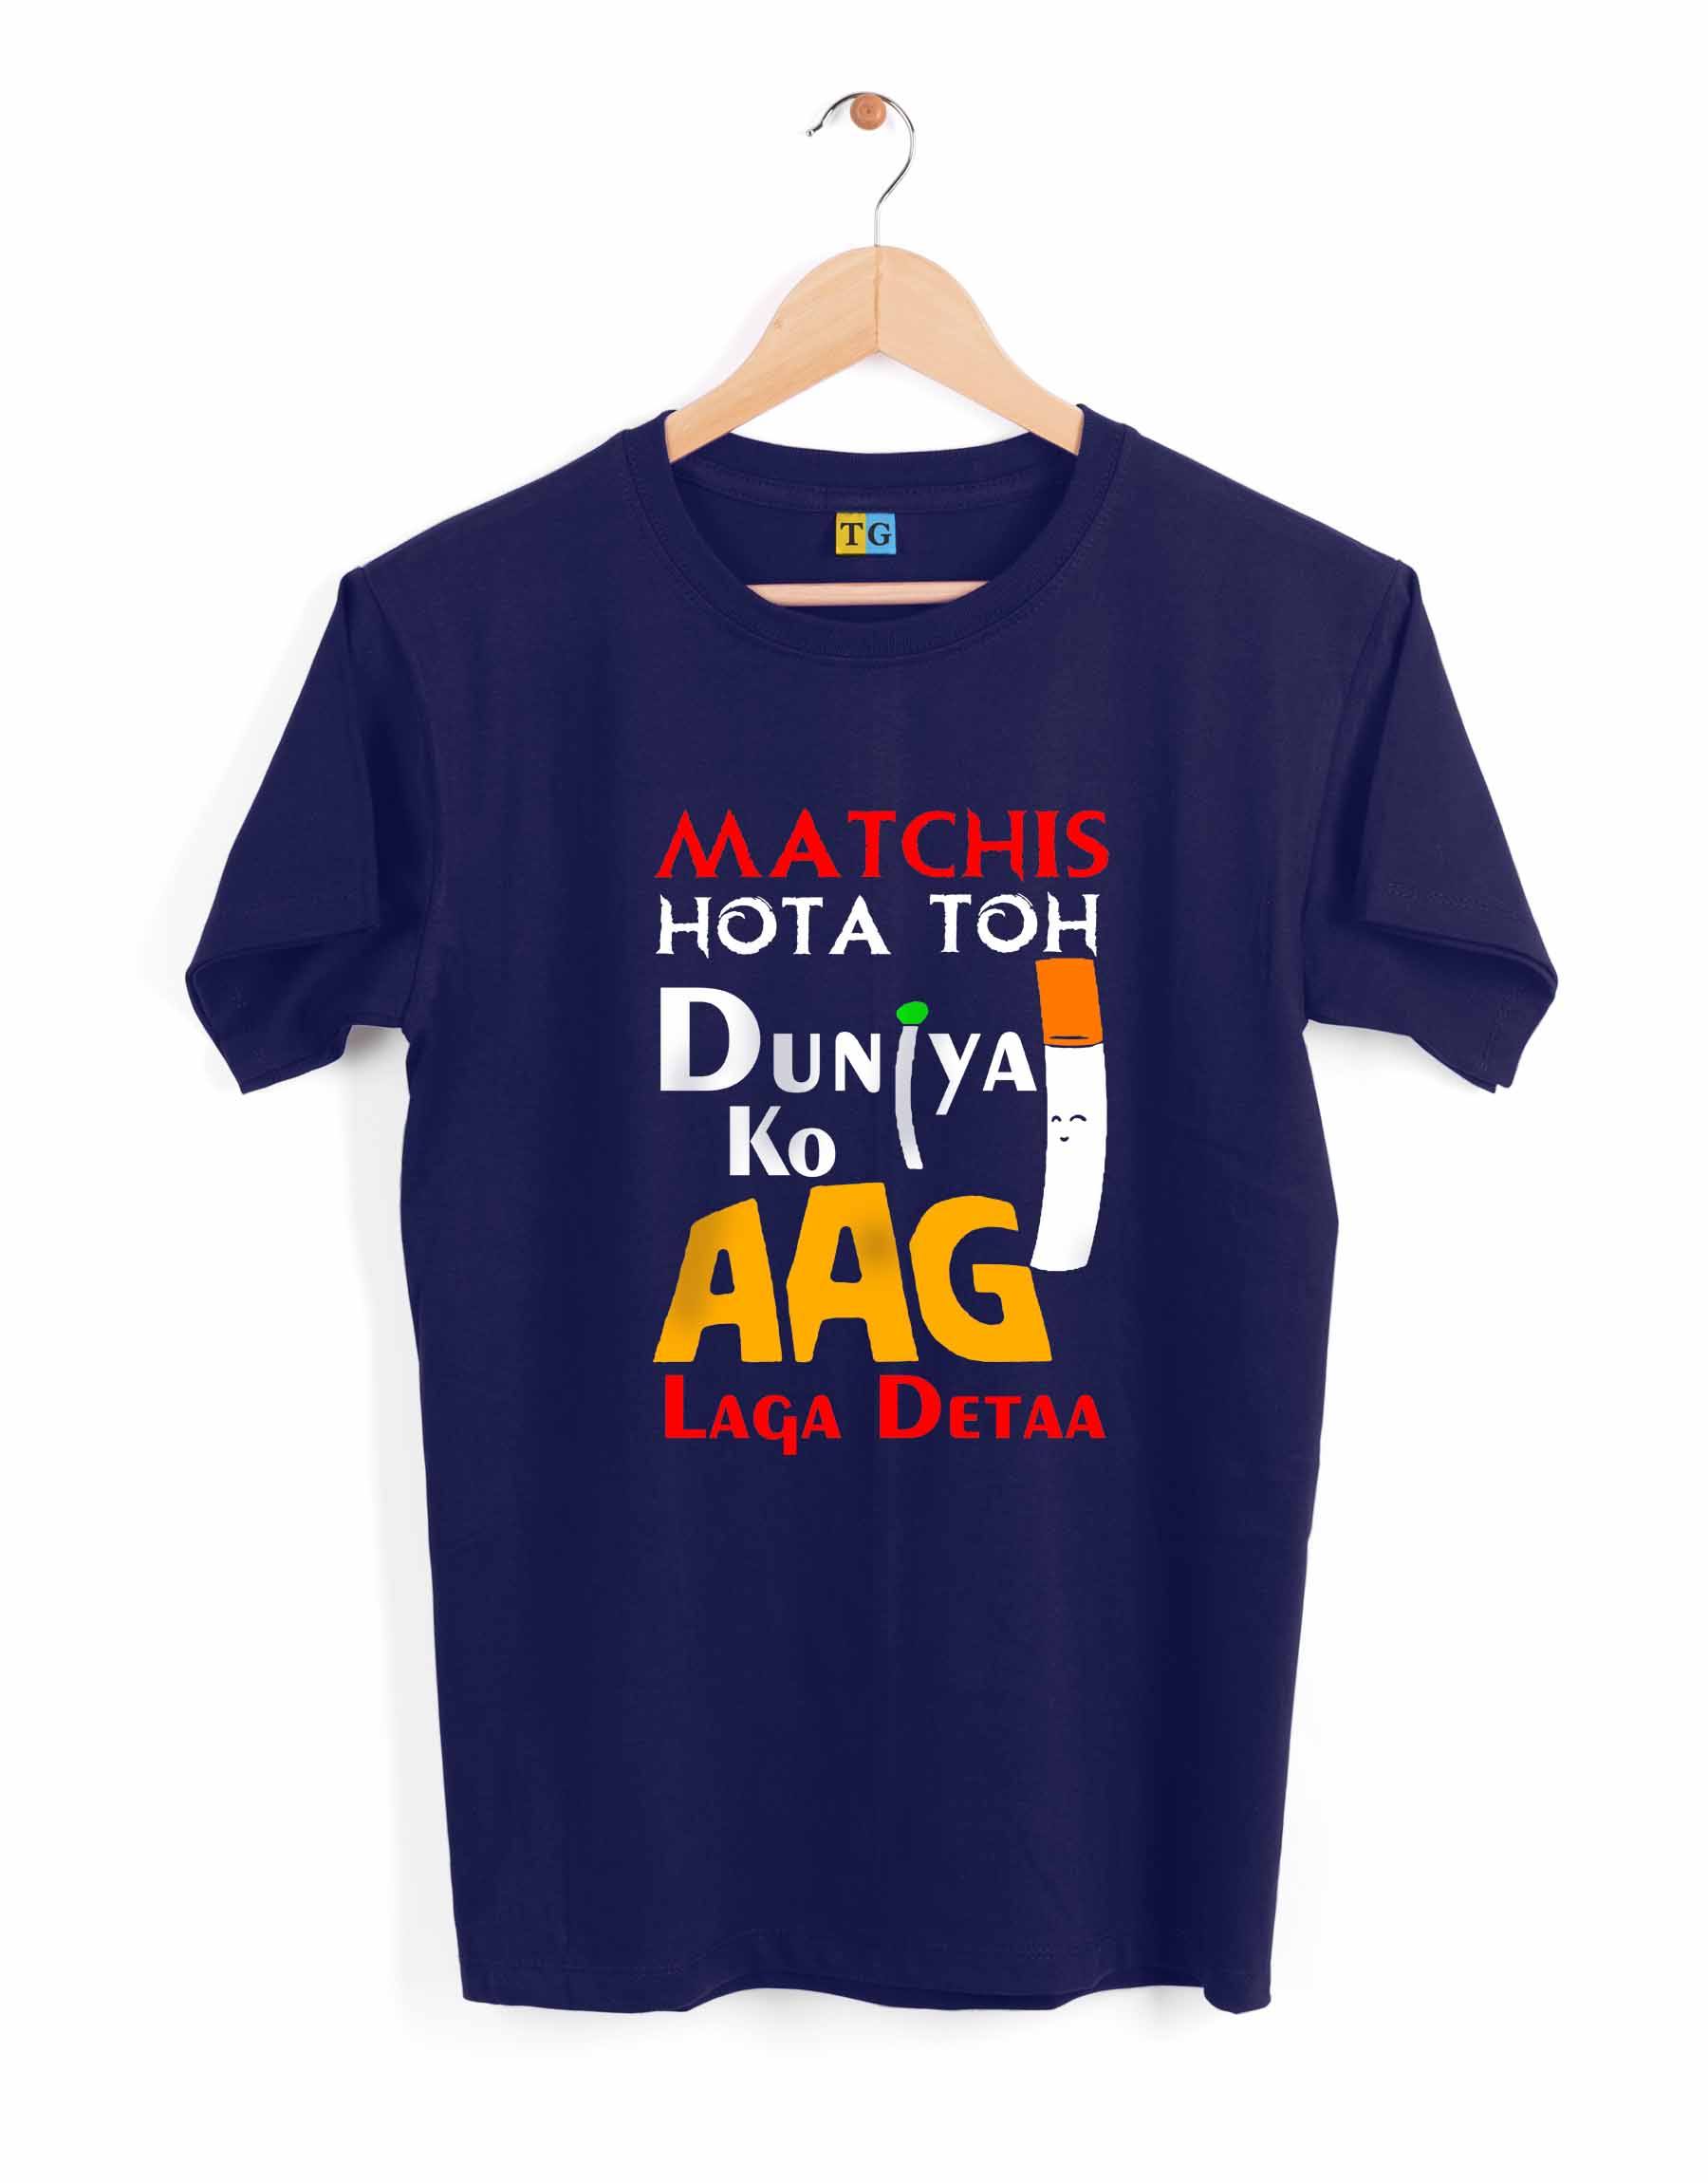 Matchis Hota Toh TEEGURUJI T-Shirt - 499.00 - TEEGURUJI - Free Shipping